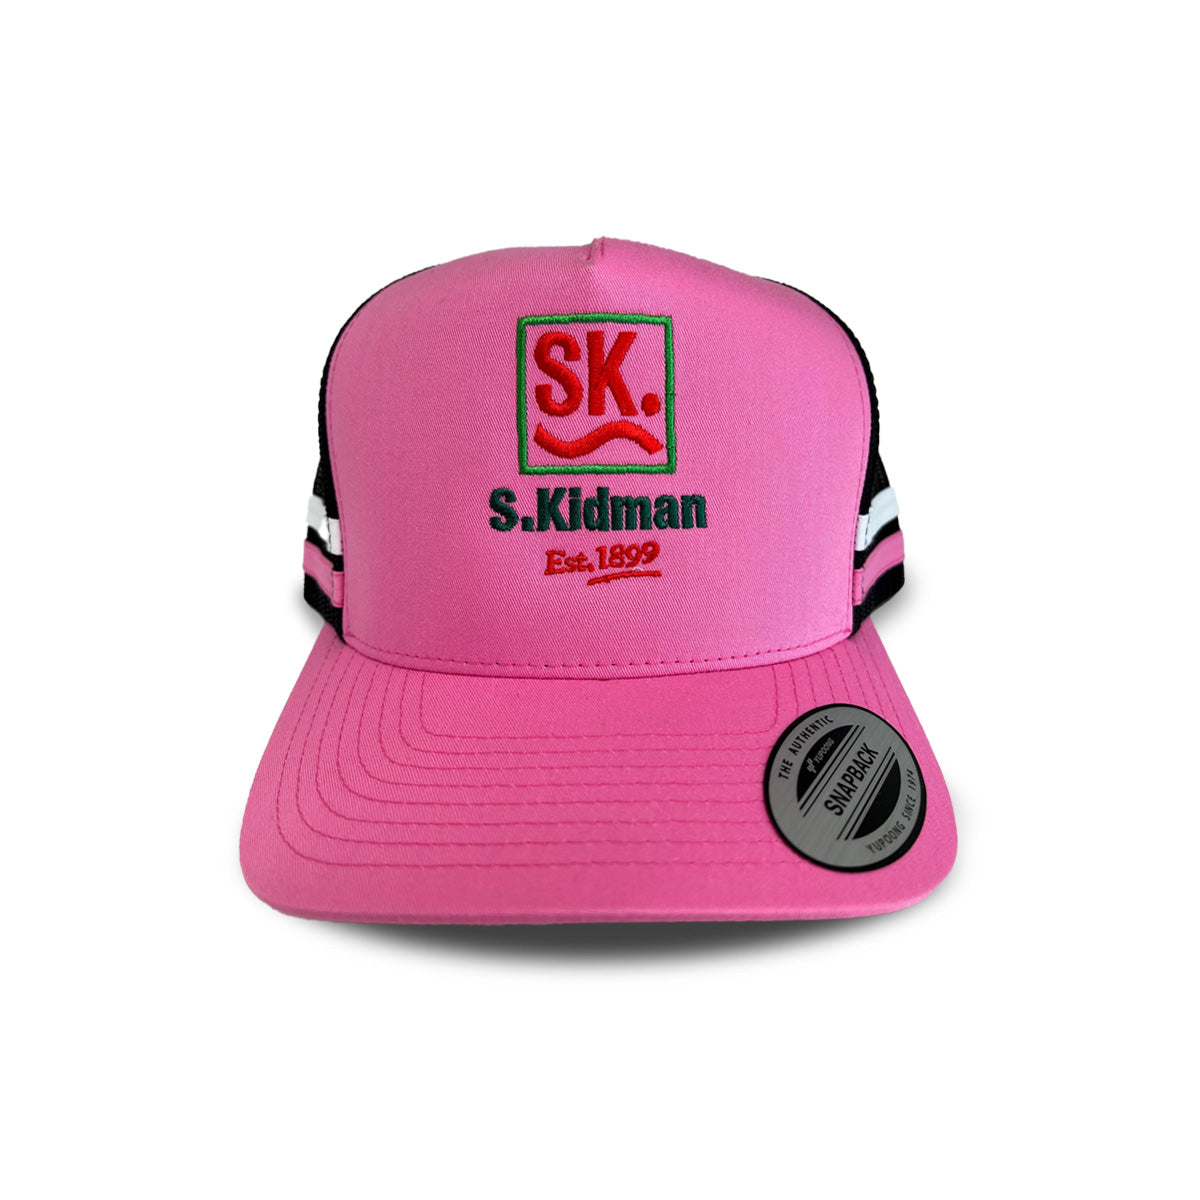 S. Kidman Cap Pink